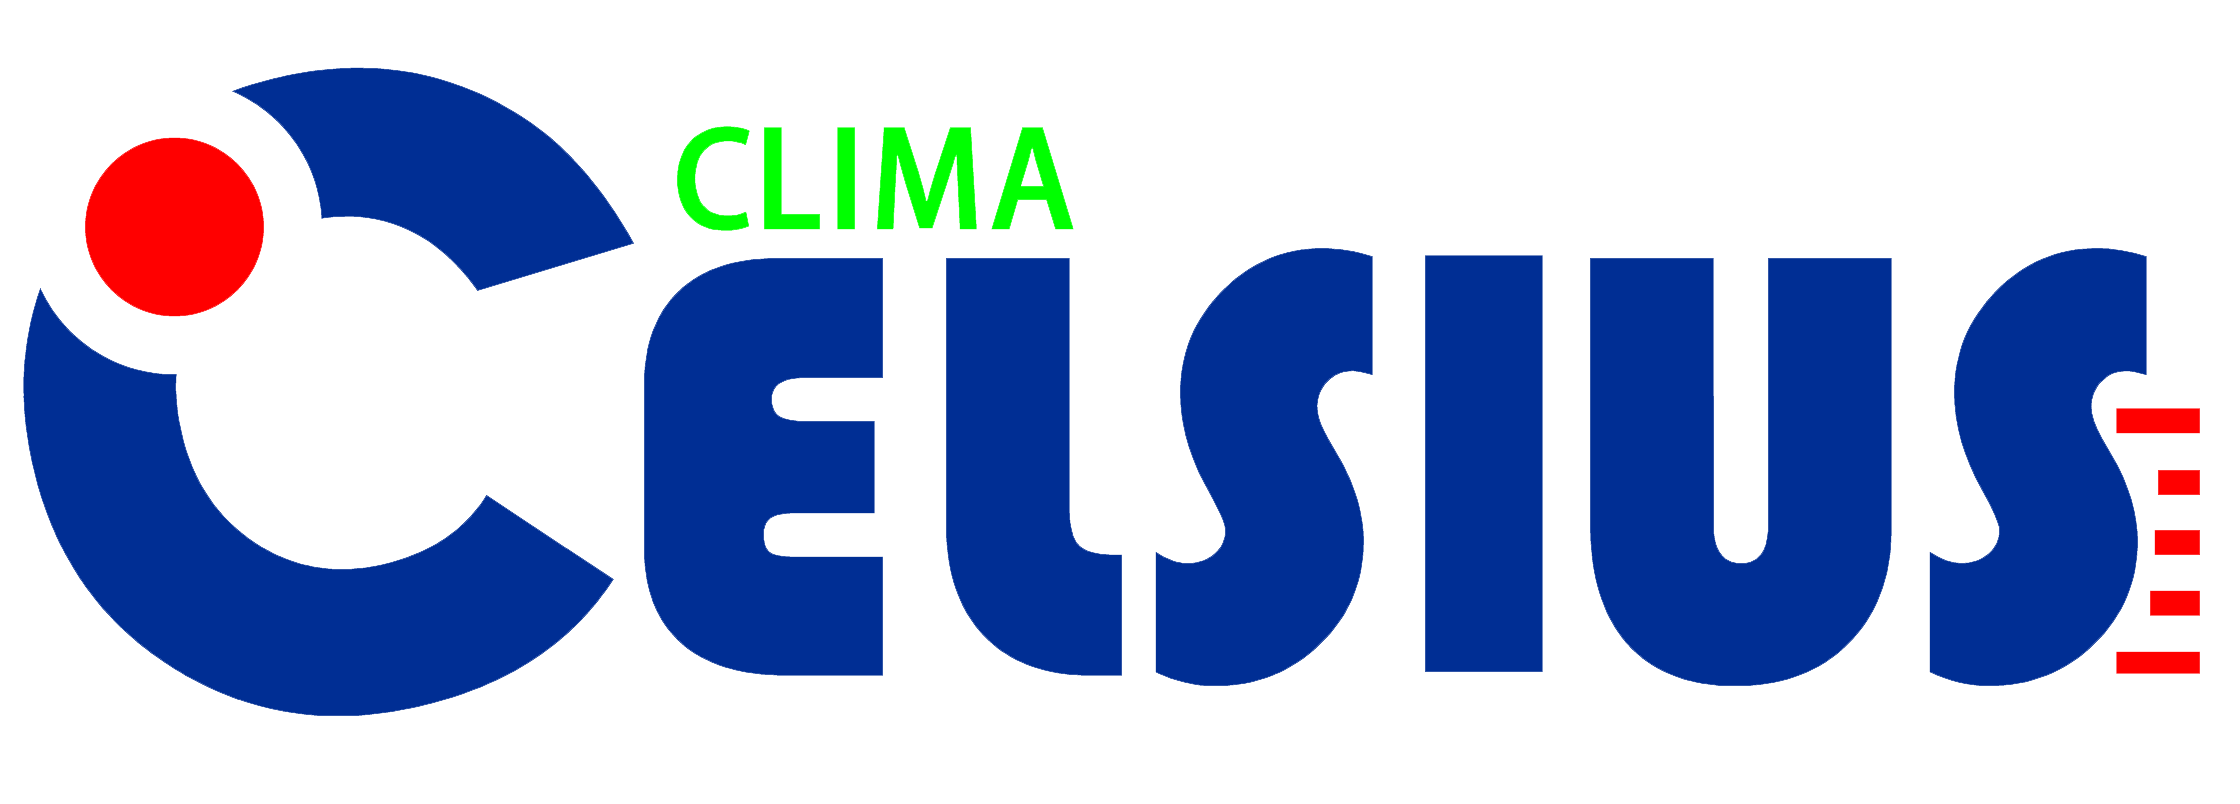 CLIMA CELSIUS